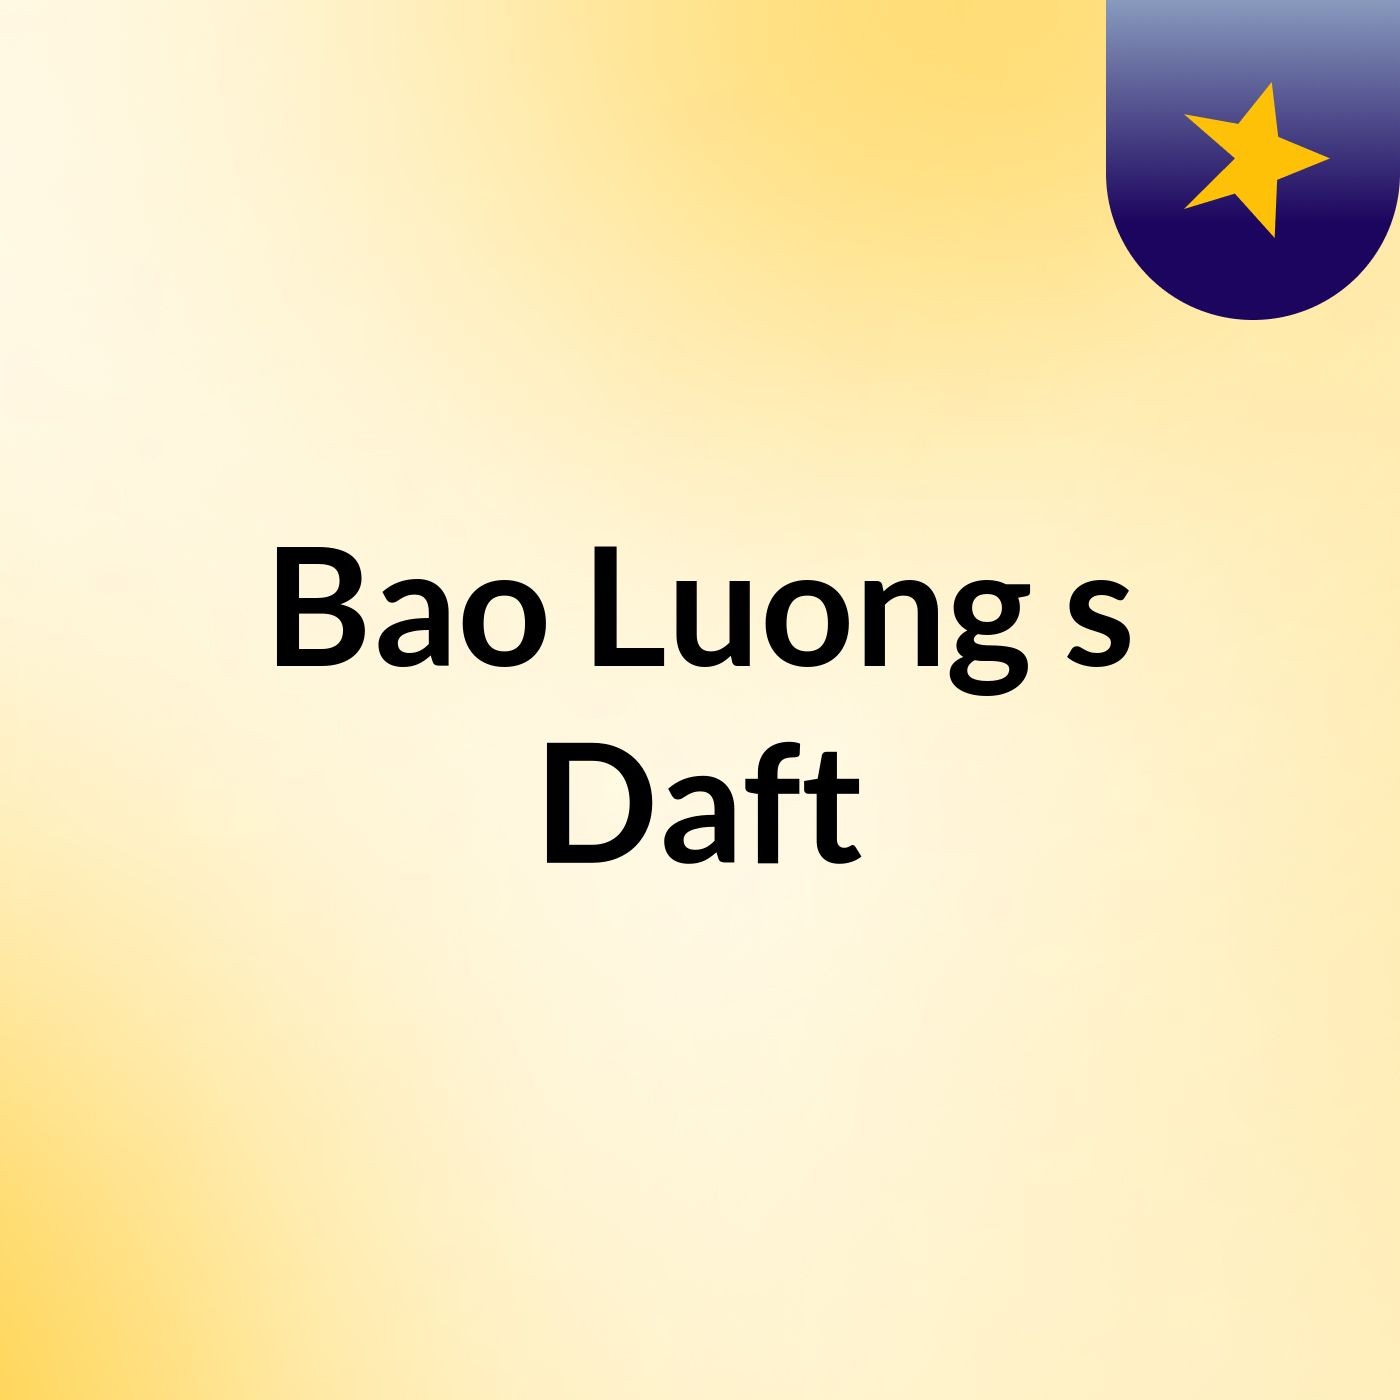 Bao Luong's Daft